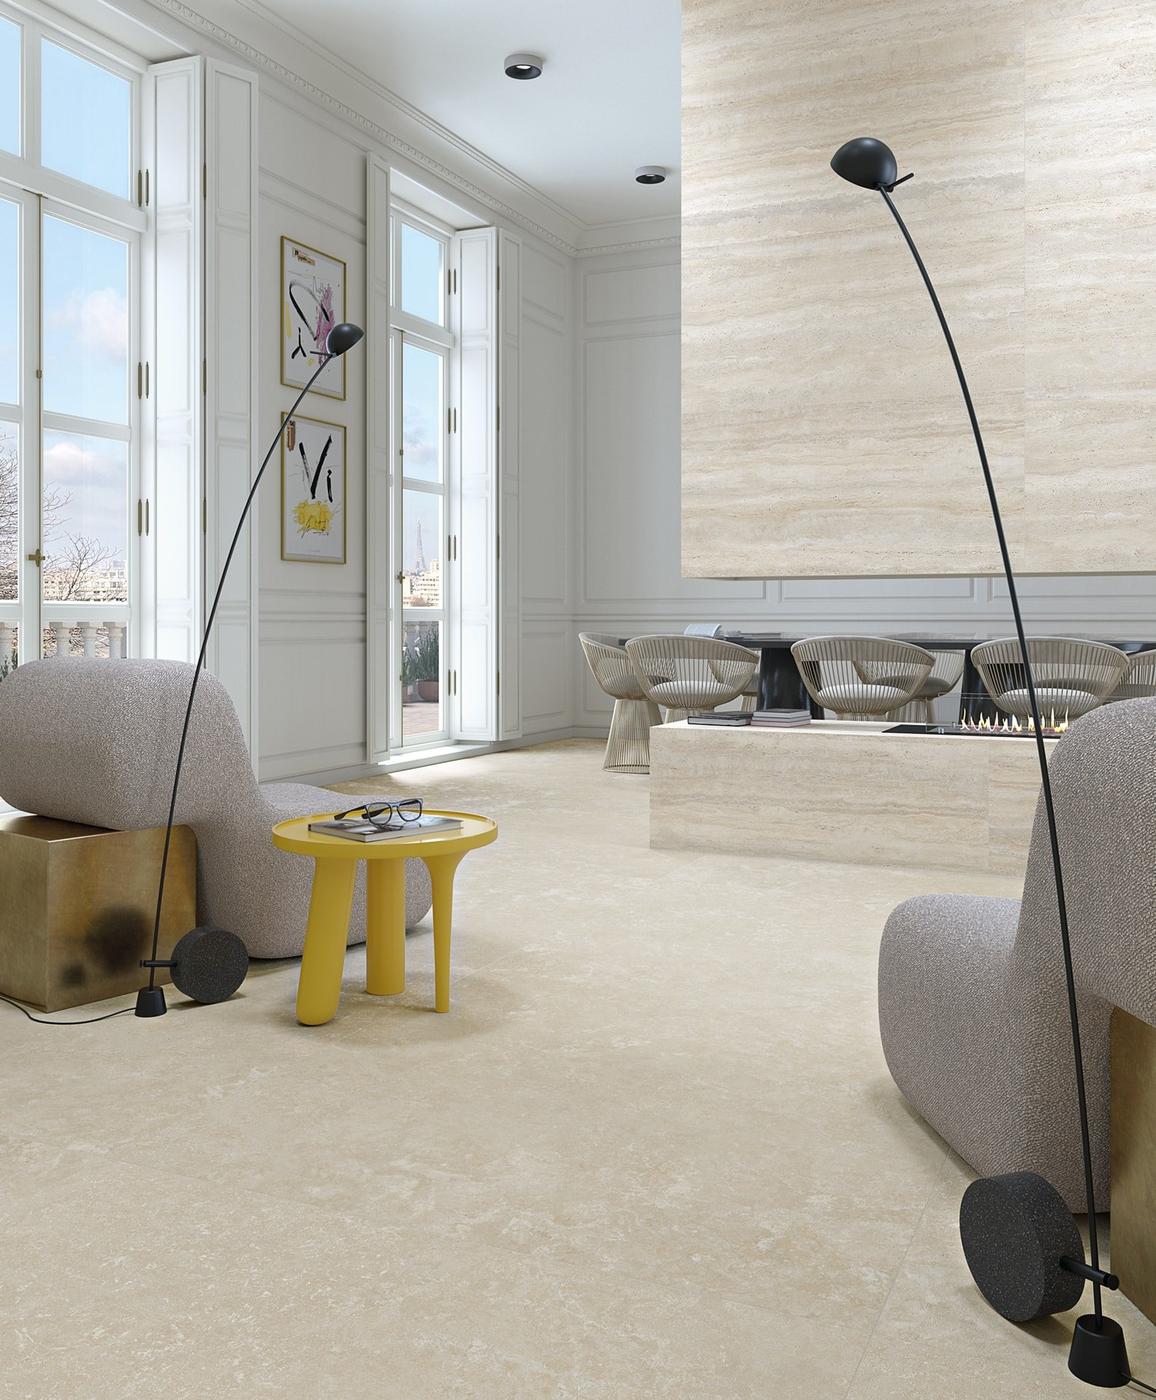 Carrelage aspect béton beige dans un salon élégant blanc meubles contemporains lampadaire noir table jaune